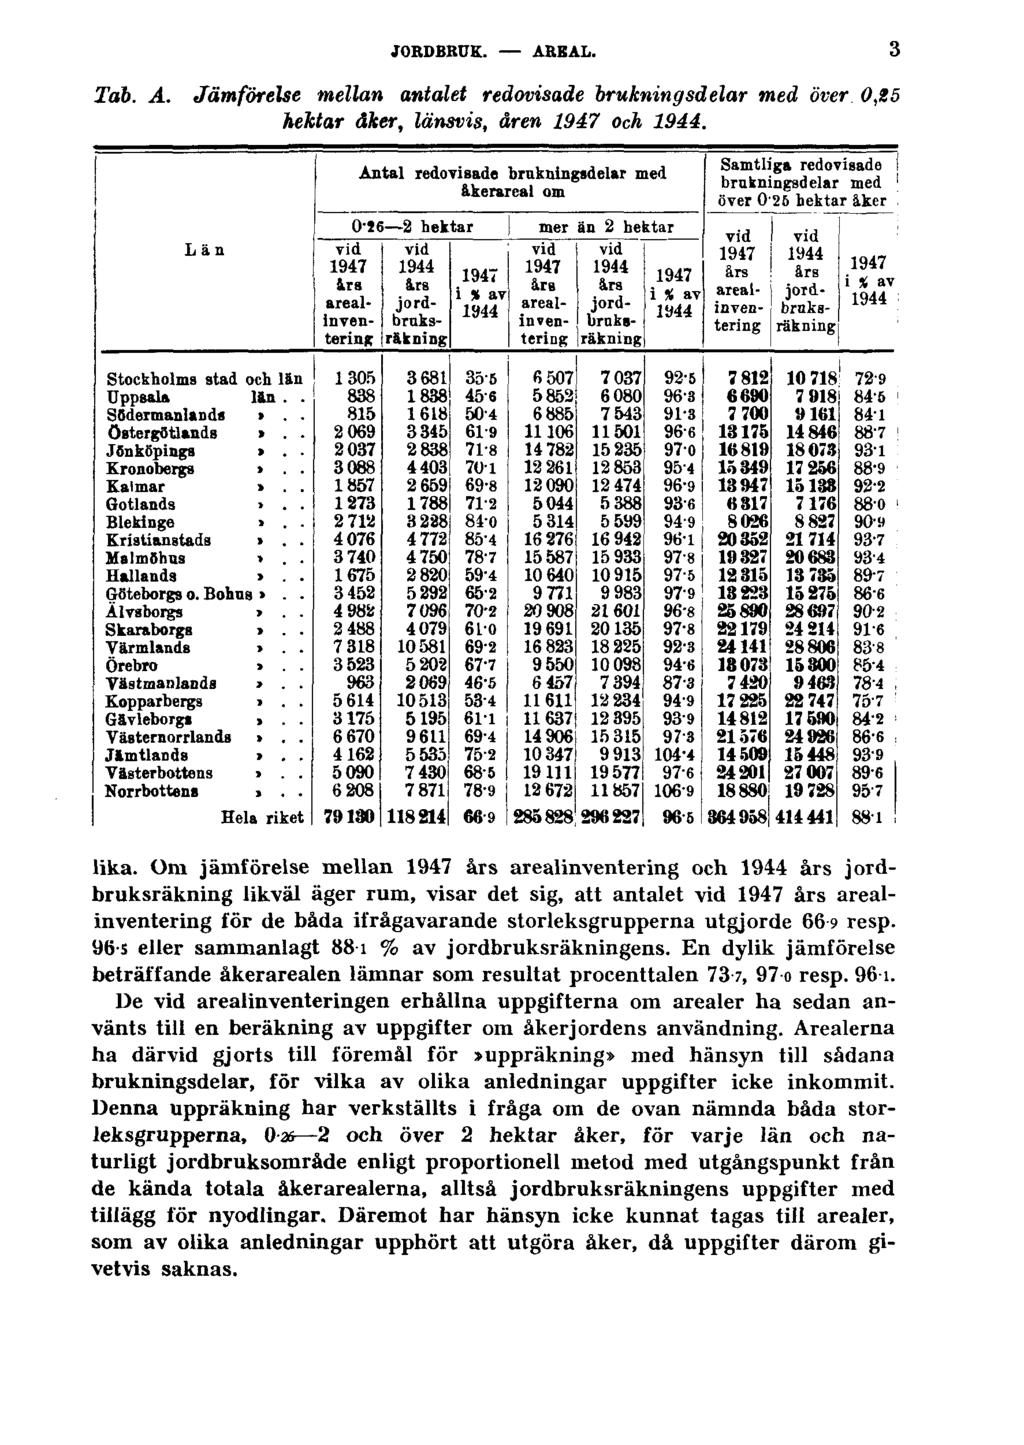 JORDBRUK. AREAL. Tab. A. Jämförelse mellan antalet redovisade brukningsdelar med över 0,25 hektar åker, länsvis, åren 1947 och 1944. 3 lika.